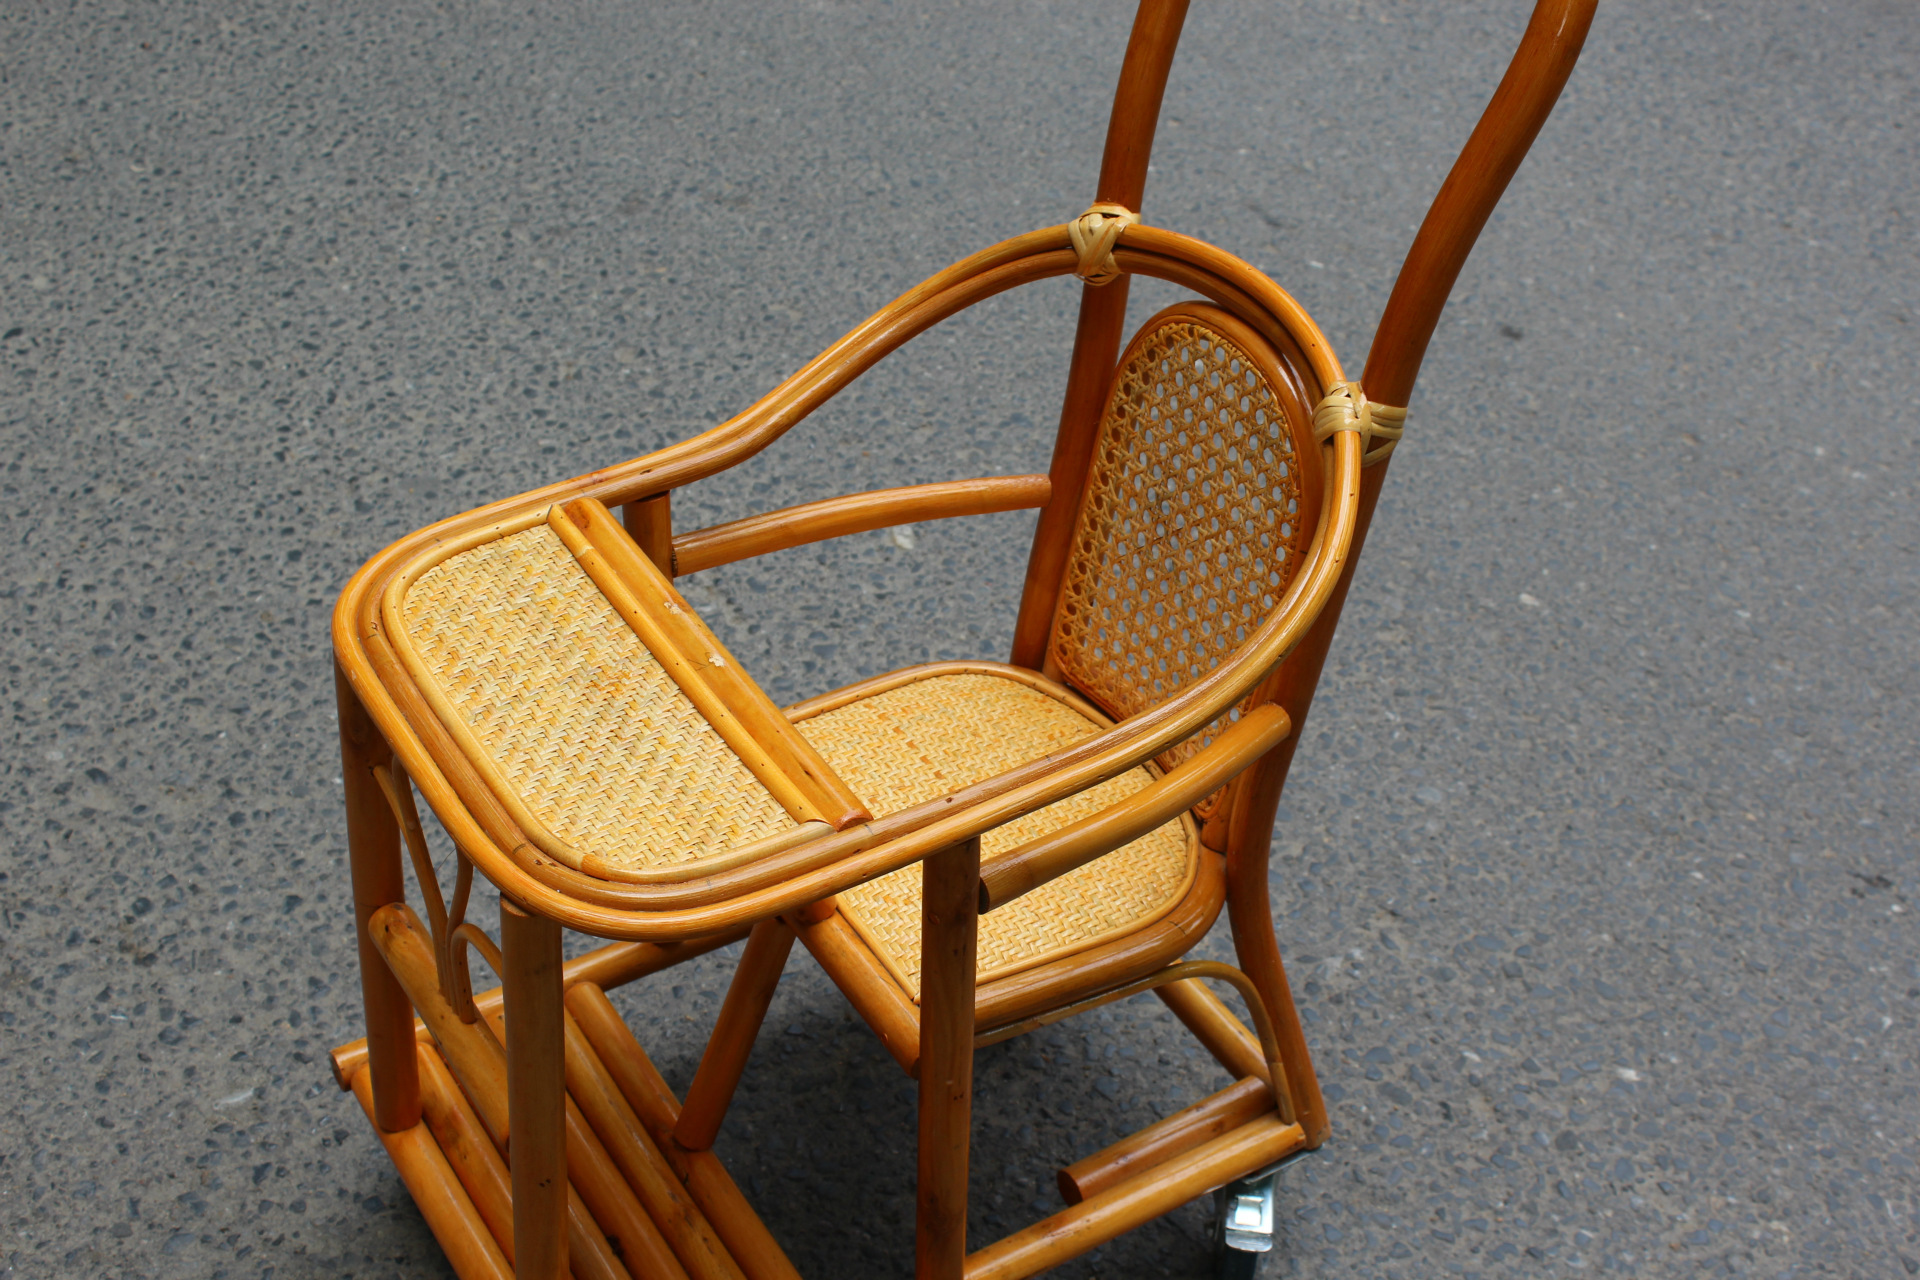 【厂家直销】天然藤条编织婴儿摇椅 简约藤条婴儿椅子 